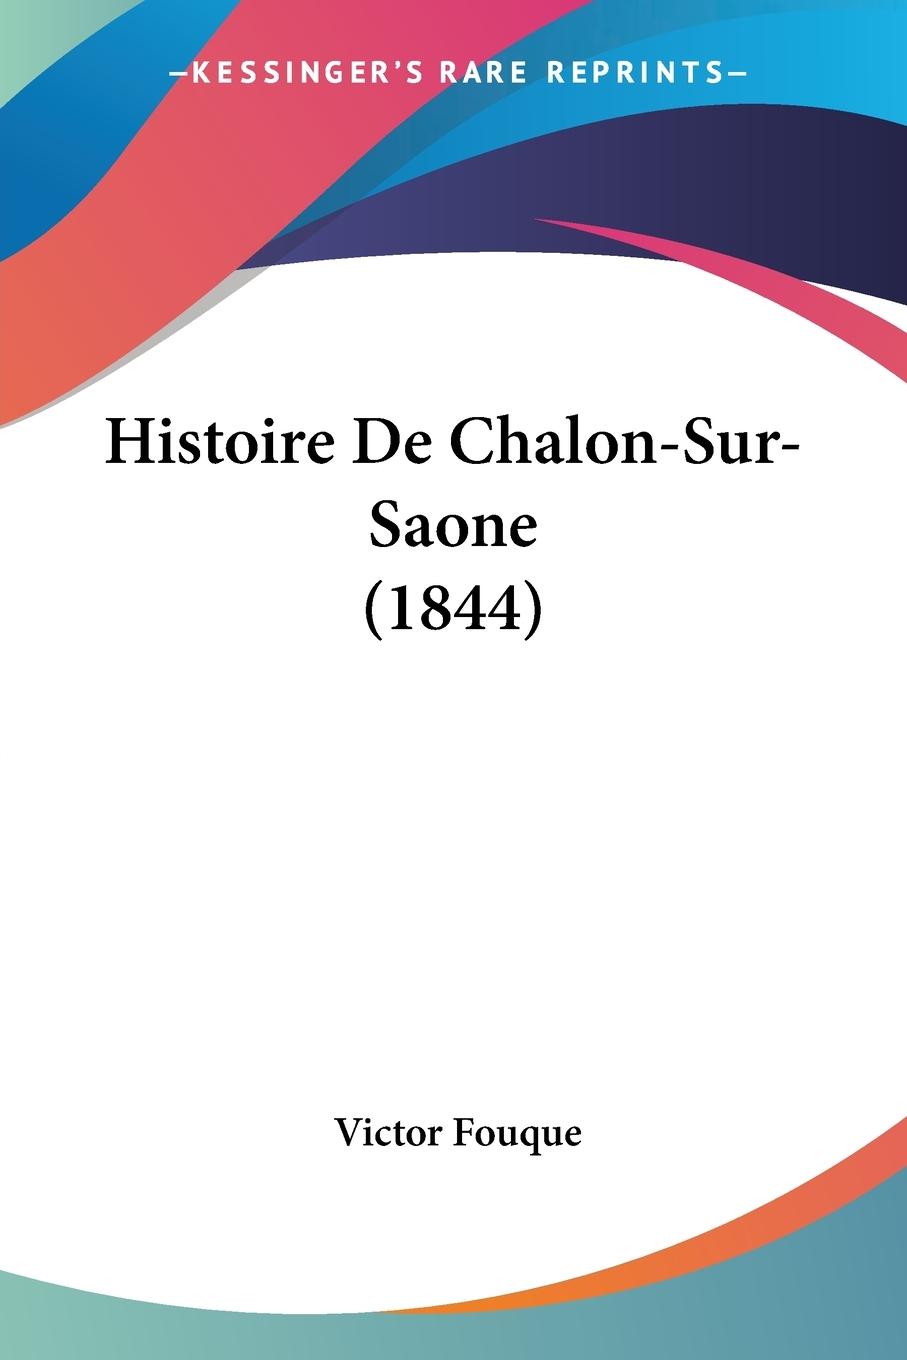 Histoire De Chalon-Sur-Saone (1844) - Fouque, Victor